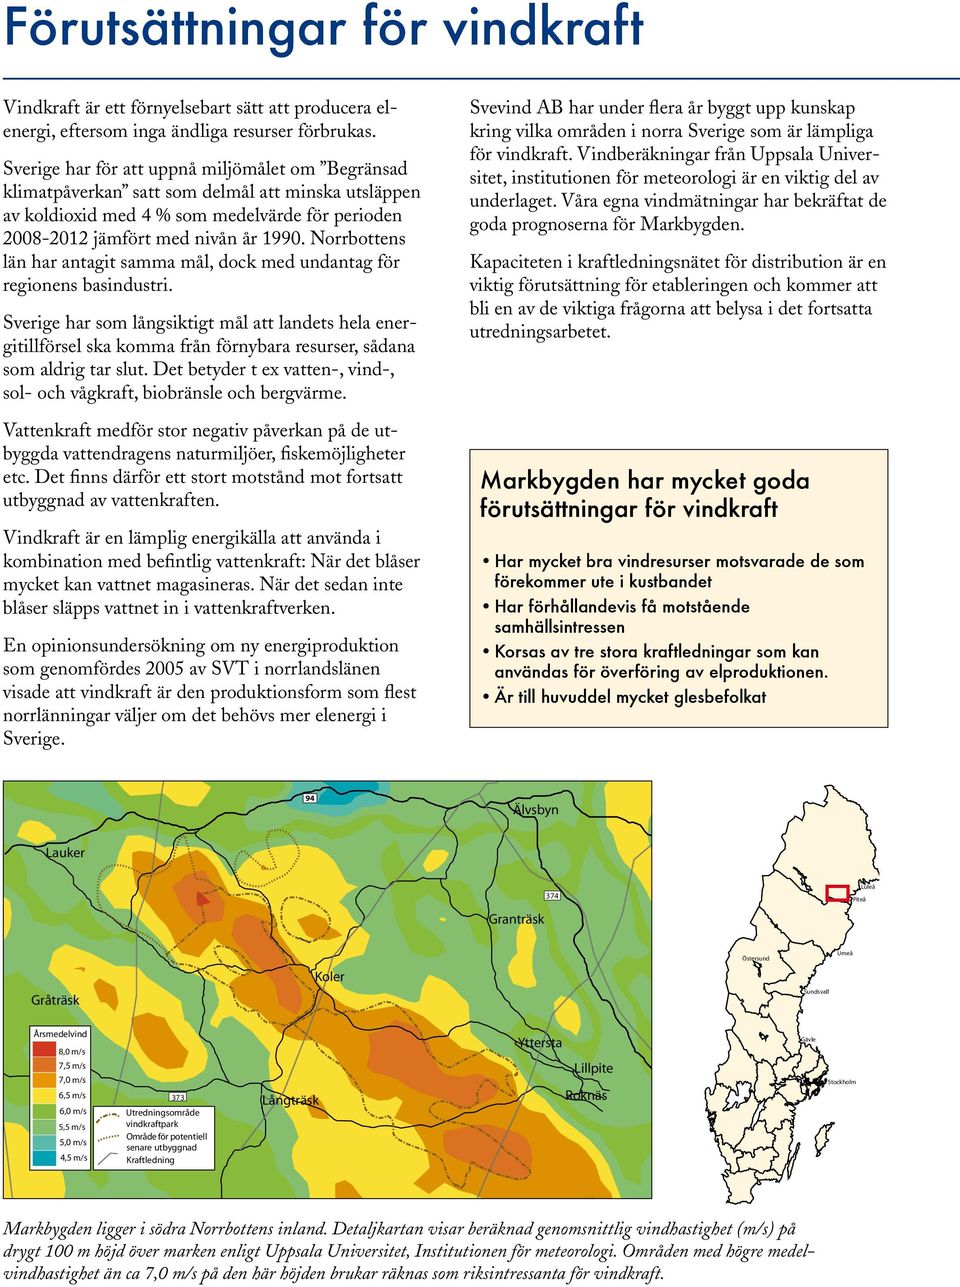 Norrbottens län har antagit samma mål, dock med undantag för regionens basindustri.